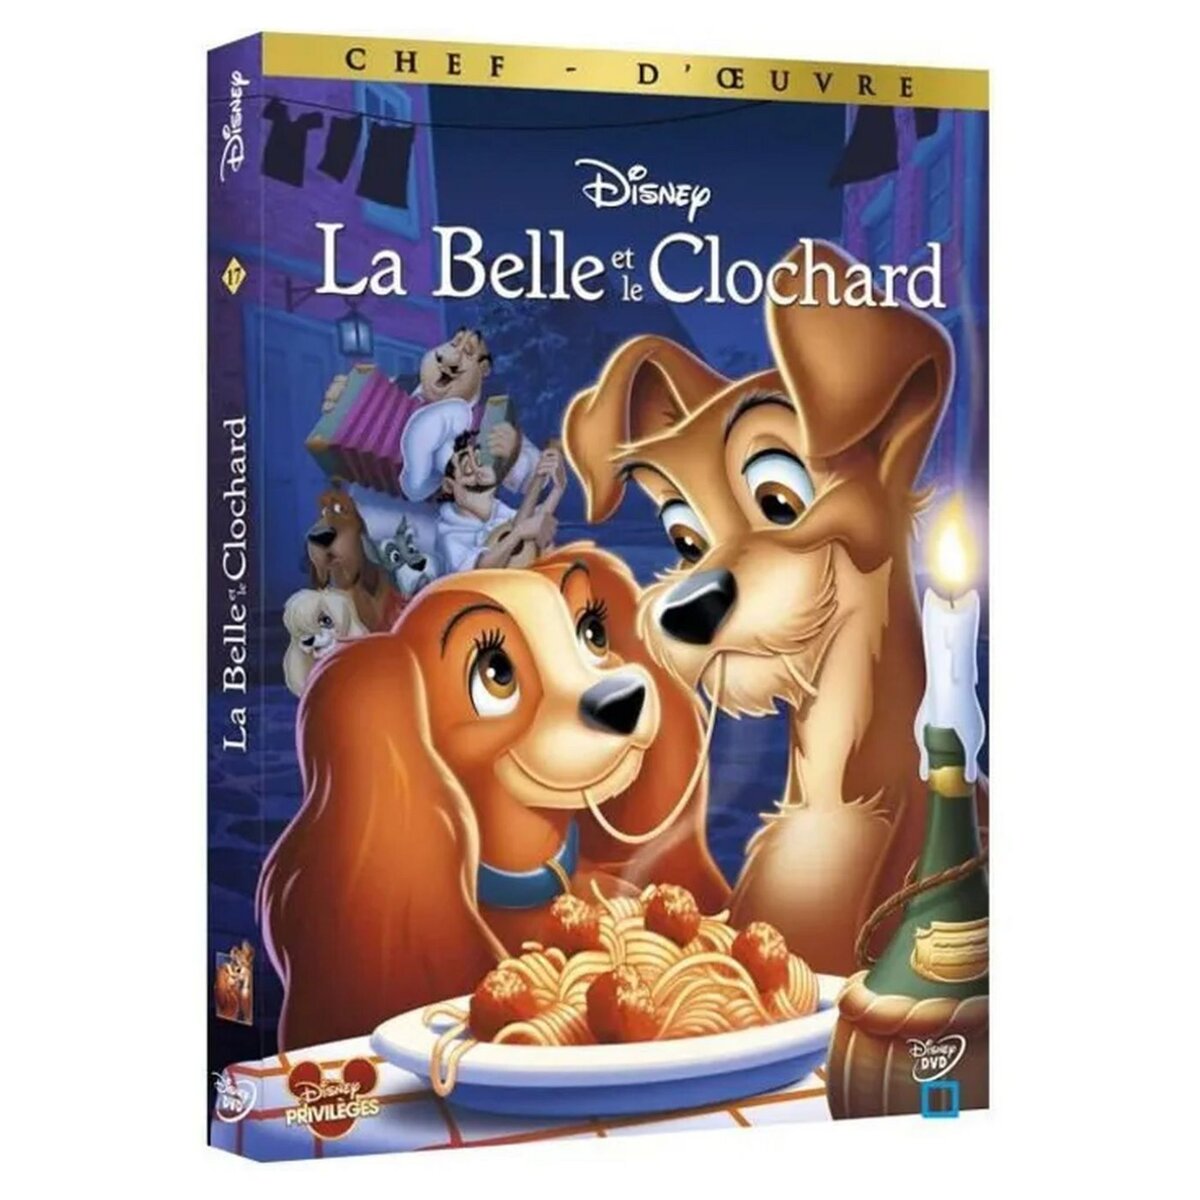 La Belle et le Clochard DVD (1955)